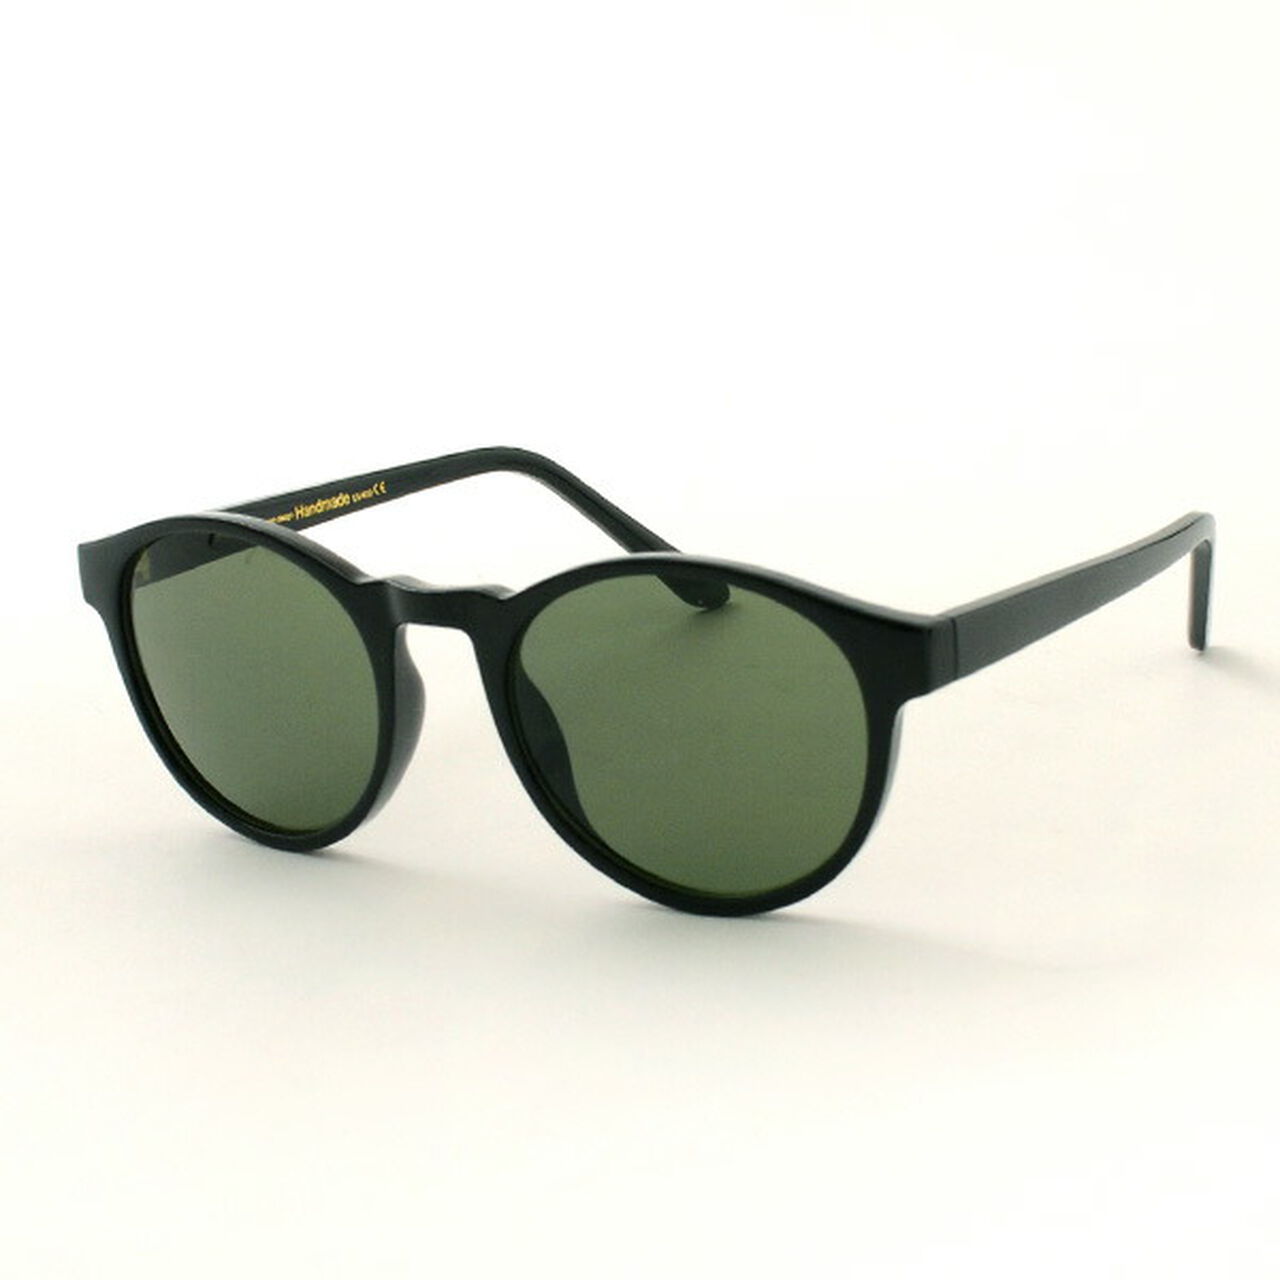 Marvin Cell Frame Sunglasses,Black, large image number 0